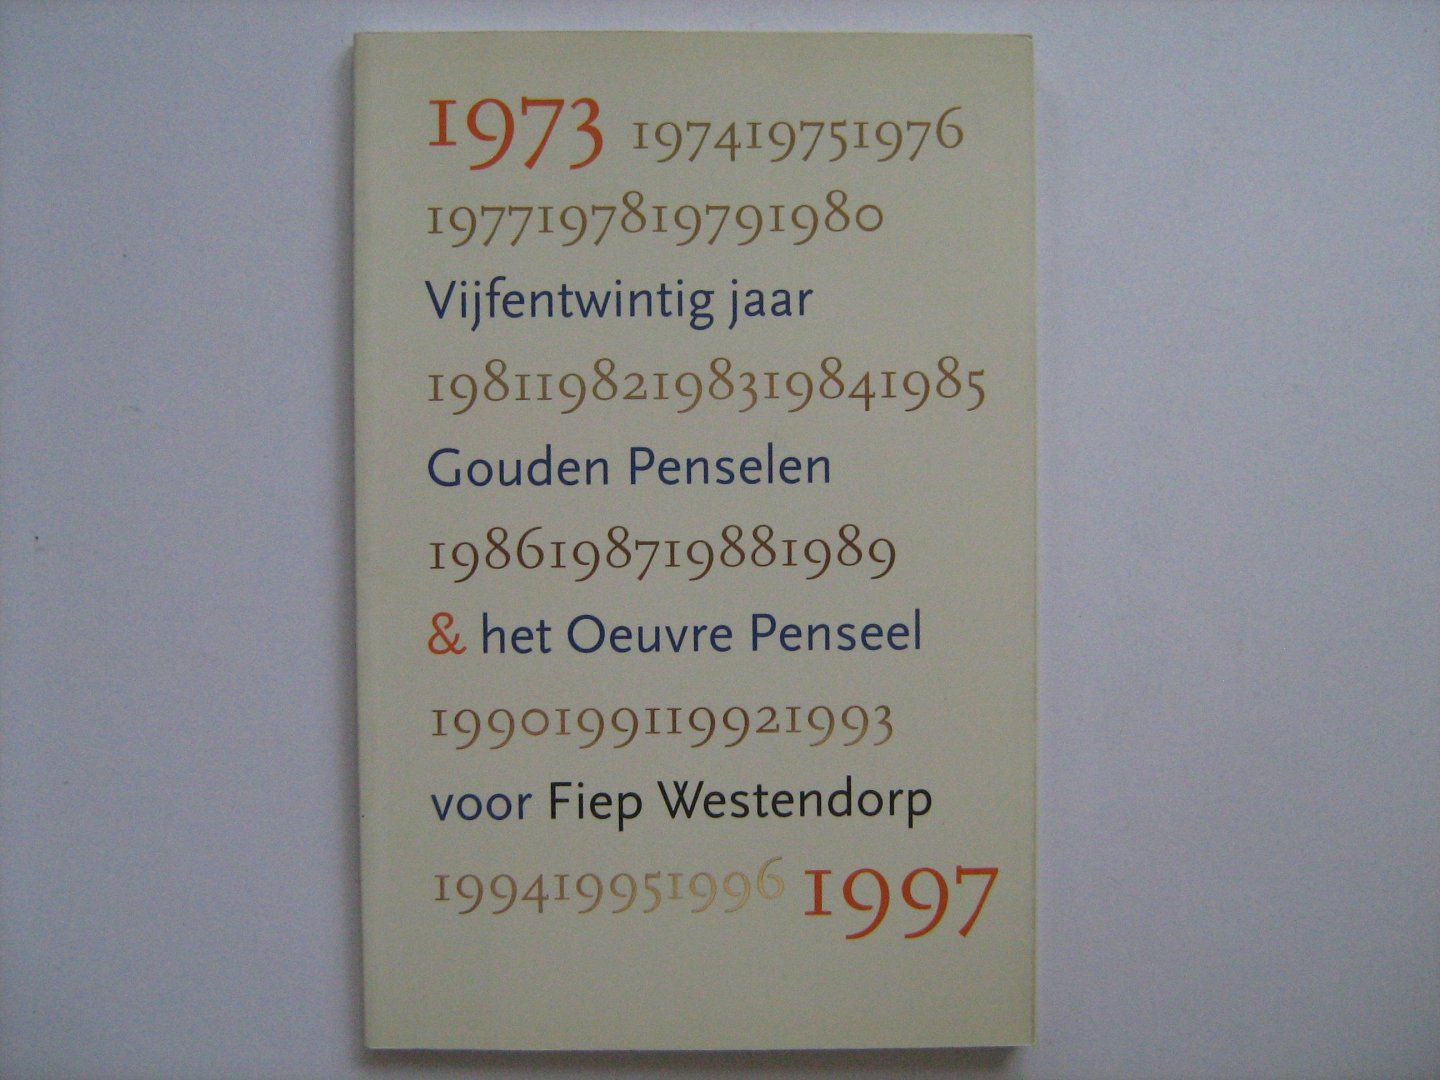 meerdere schrijvers - 25 jaar Gouden Penselen en het Oeuvre Penseel voor Fiep Westendorp 1973 - 1997